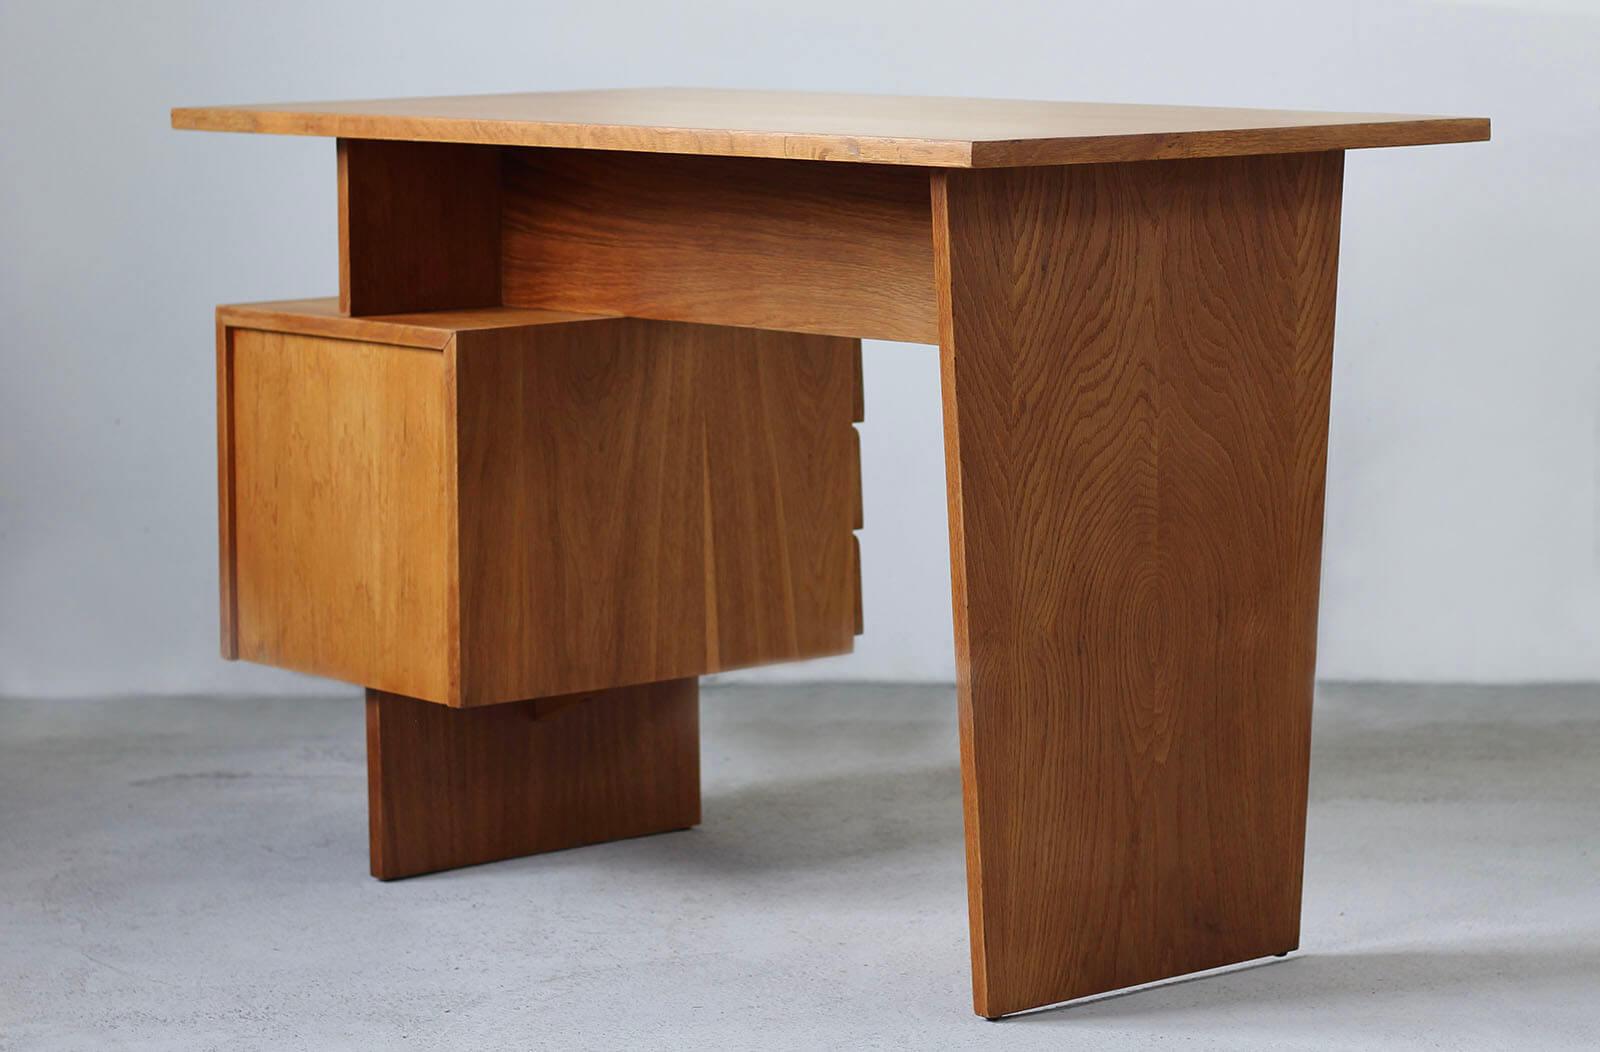 Veneer Postmodern Desk, Writing Table by Bohumil Landsman, 1970s, Fully Restored